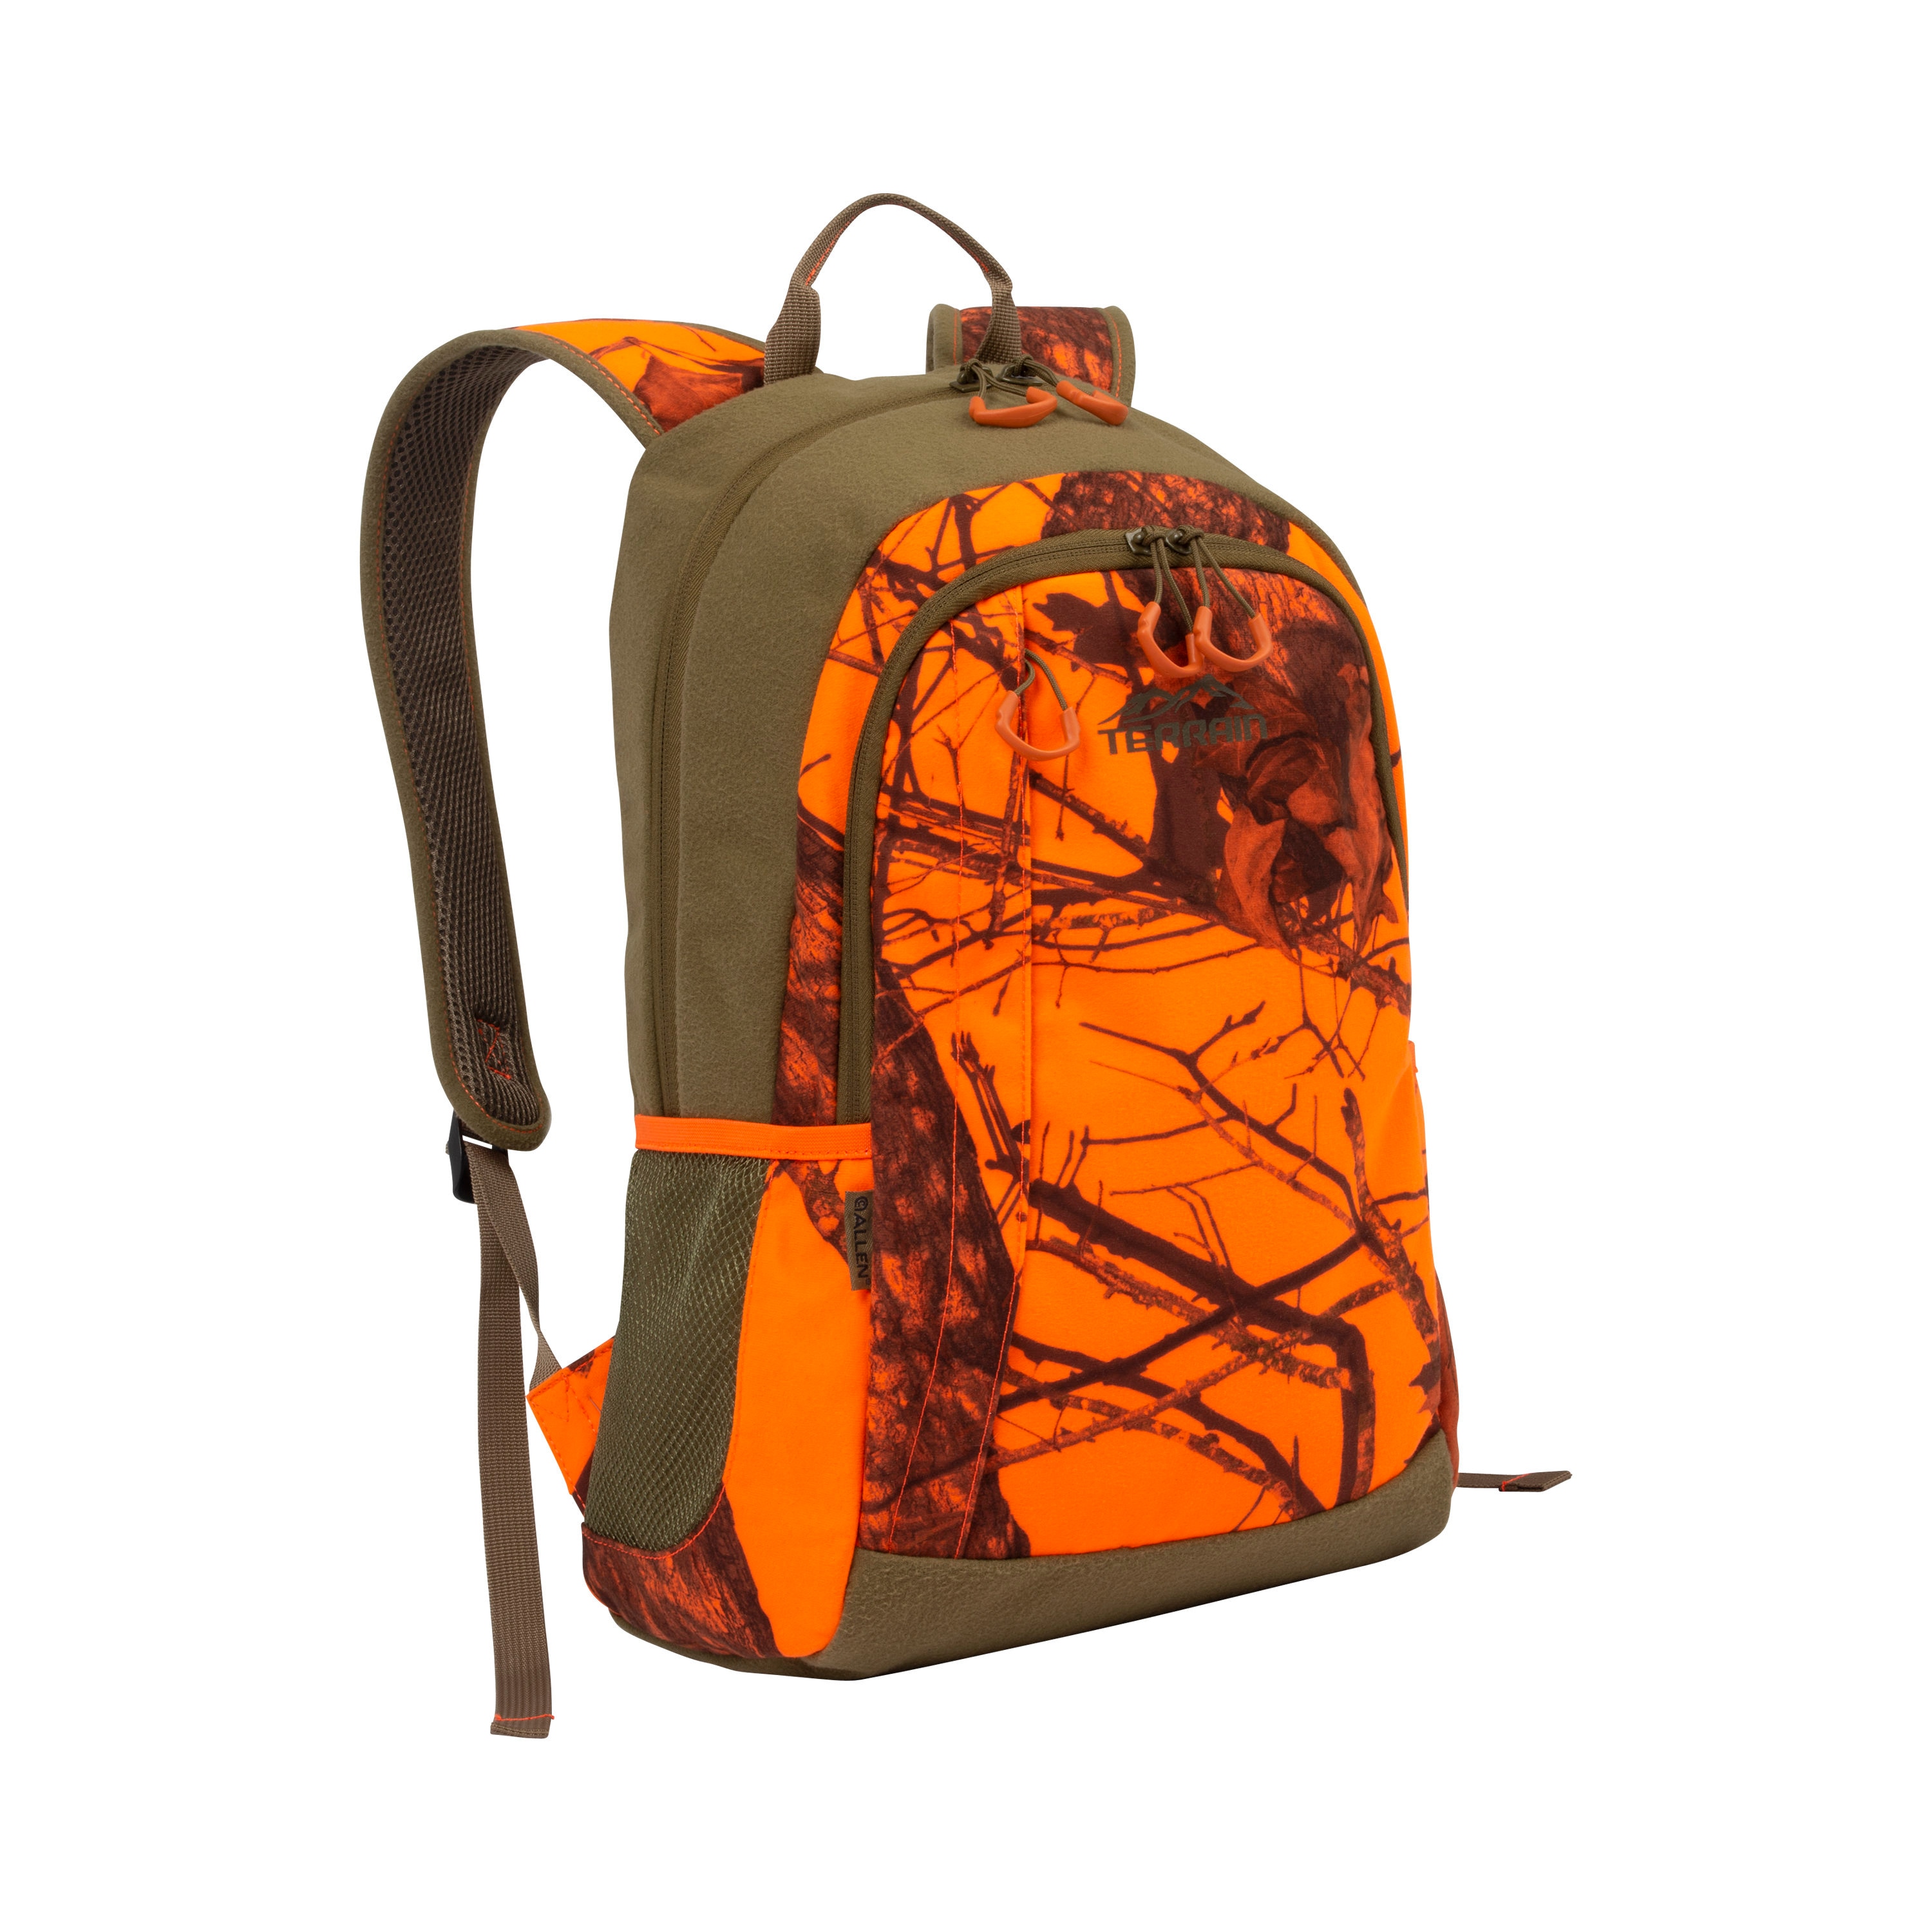 Backpack Allen Mossy Oak Orange Camo Bag Outback Outdoor Sport Travel Bag Hunt 